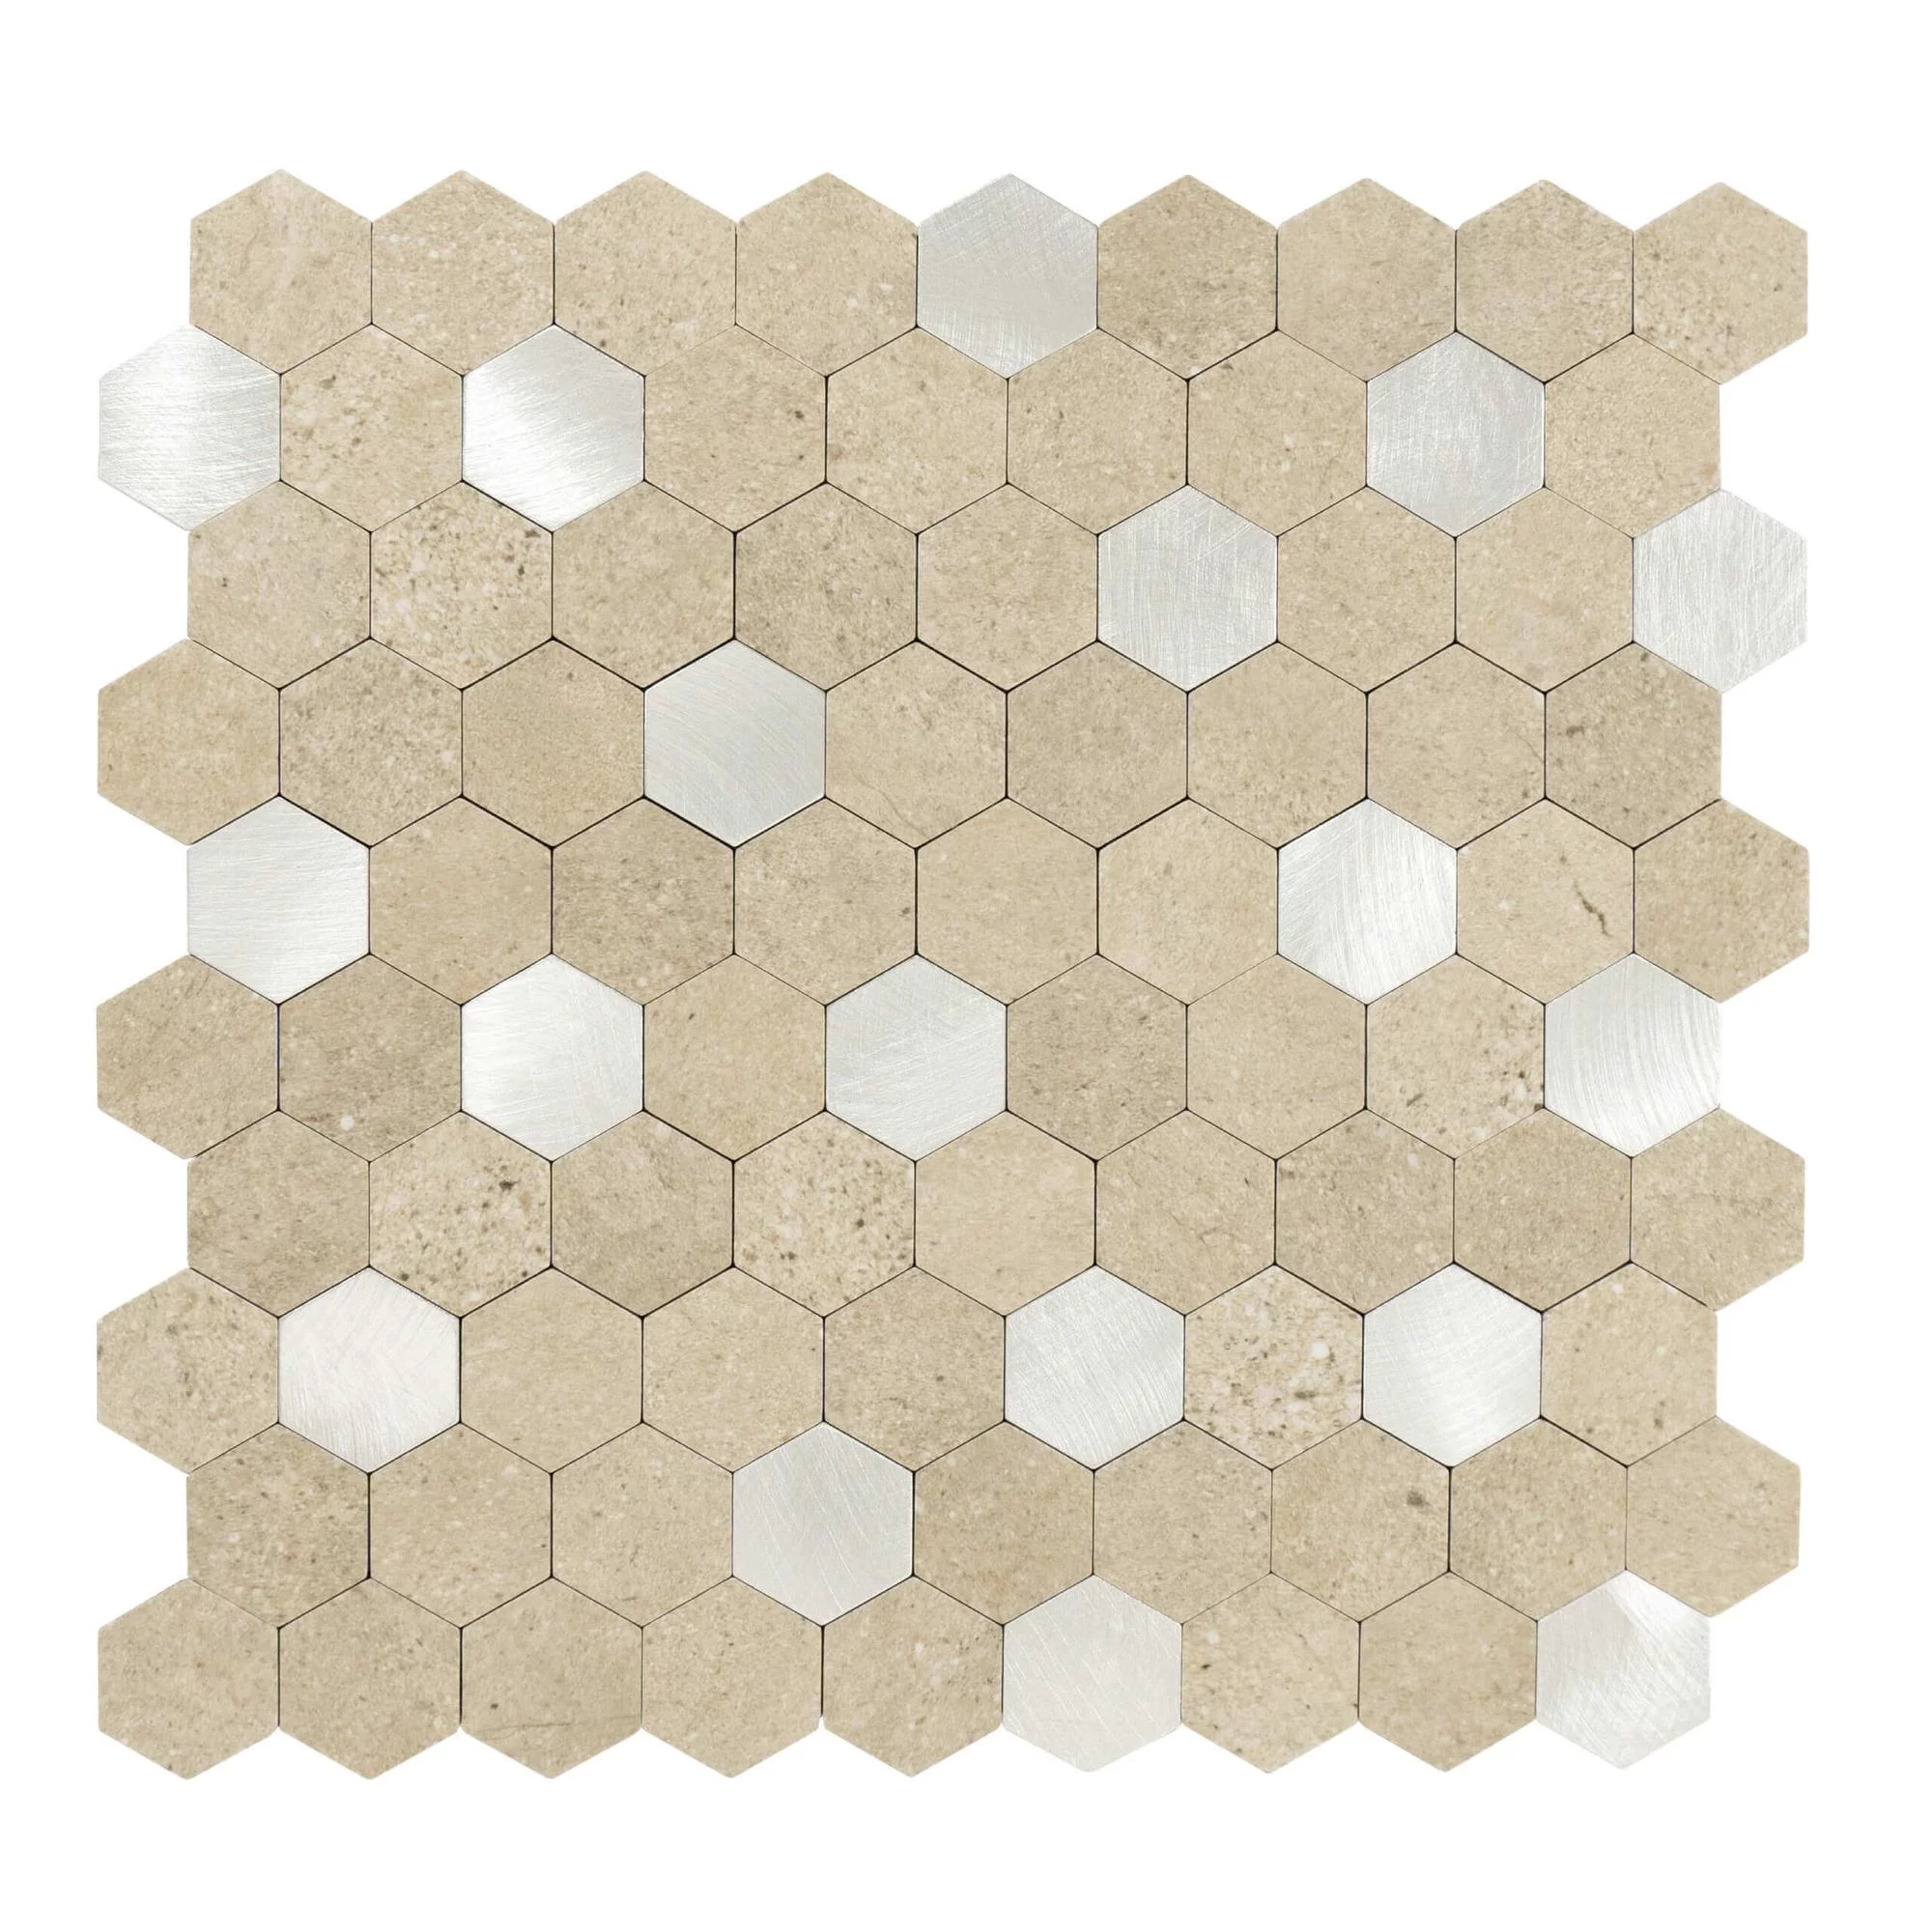 selbstklebende-fliesen-hexagon-form-0.88m².-11-stueck-steinoptik-sand-silber